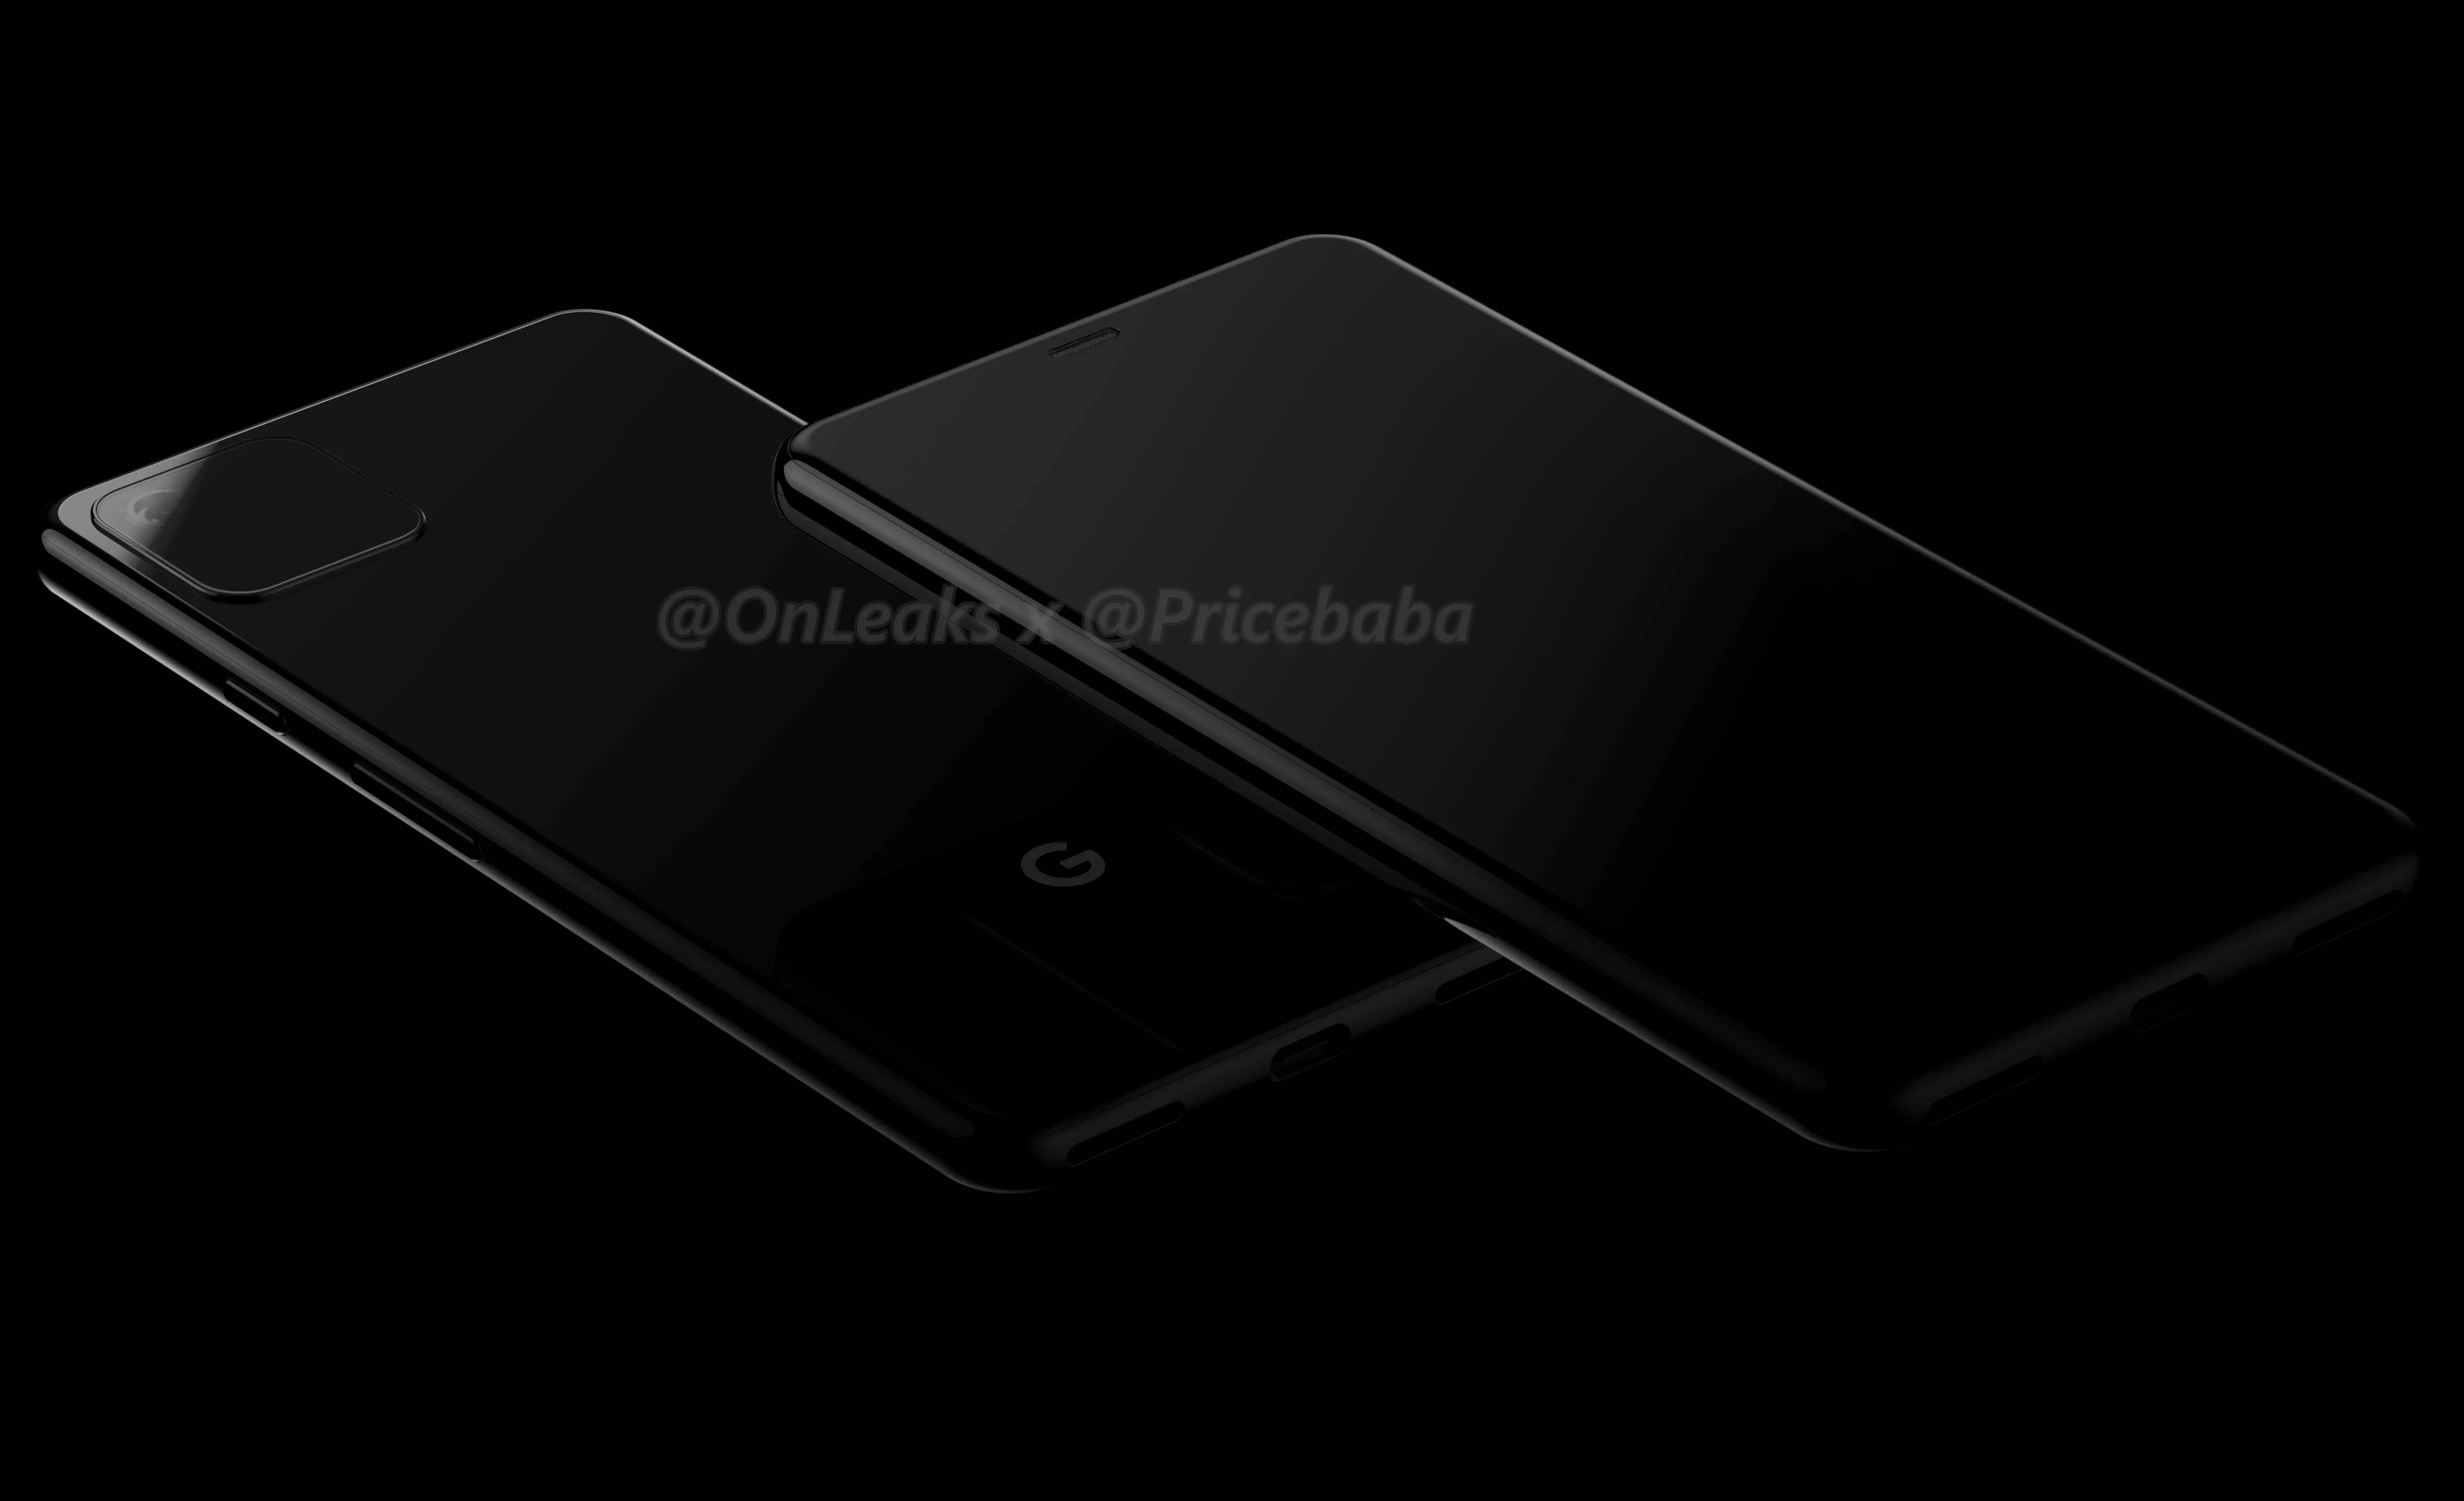 Google Pixel 4 rendery onleaks kiedy premiera iPhone 2019 plotki przecieki wycieki